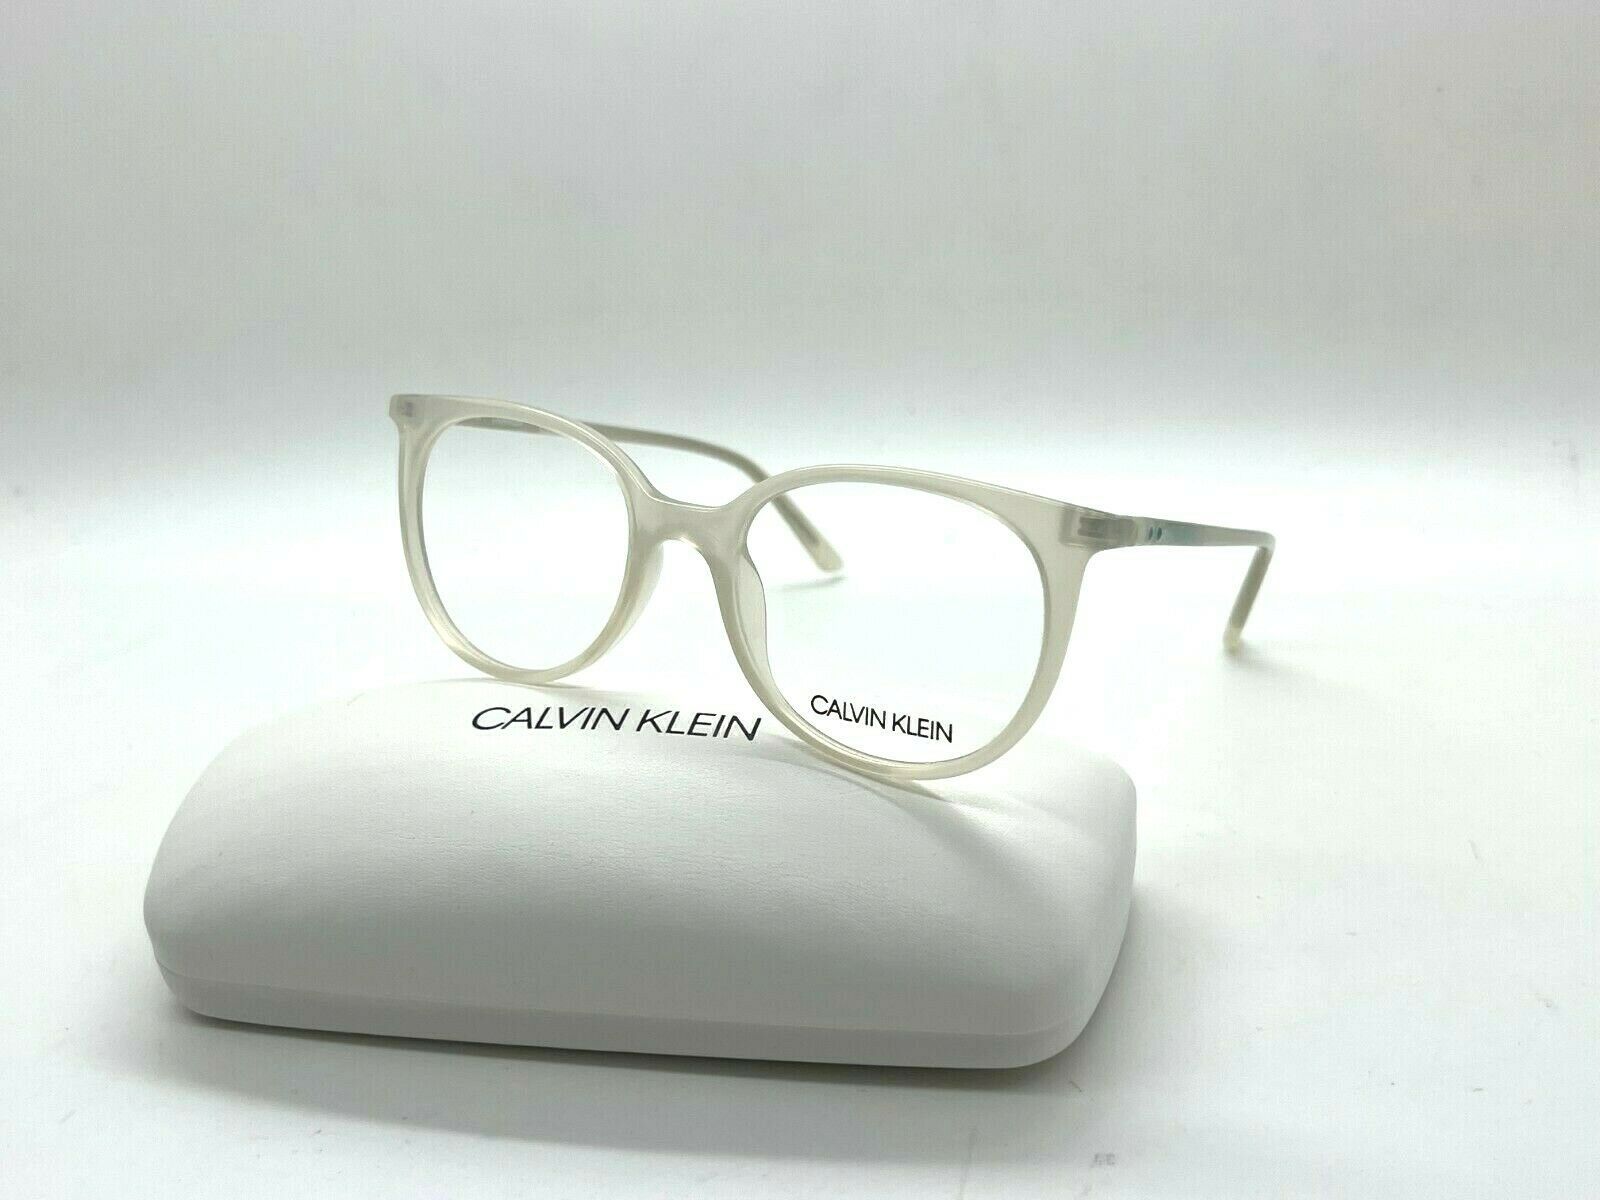 Primary image for Calvin Klein CK 19508 101 MILKY WHITE 49-18-135MM Eyeglasses Frames / CASE SMALL